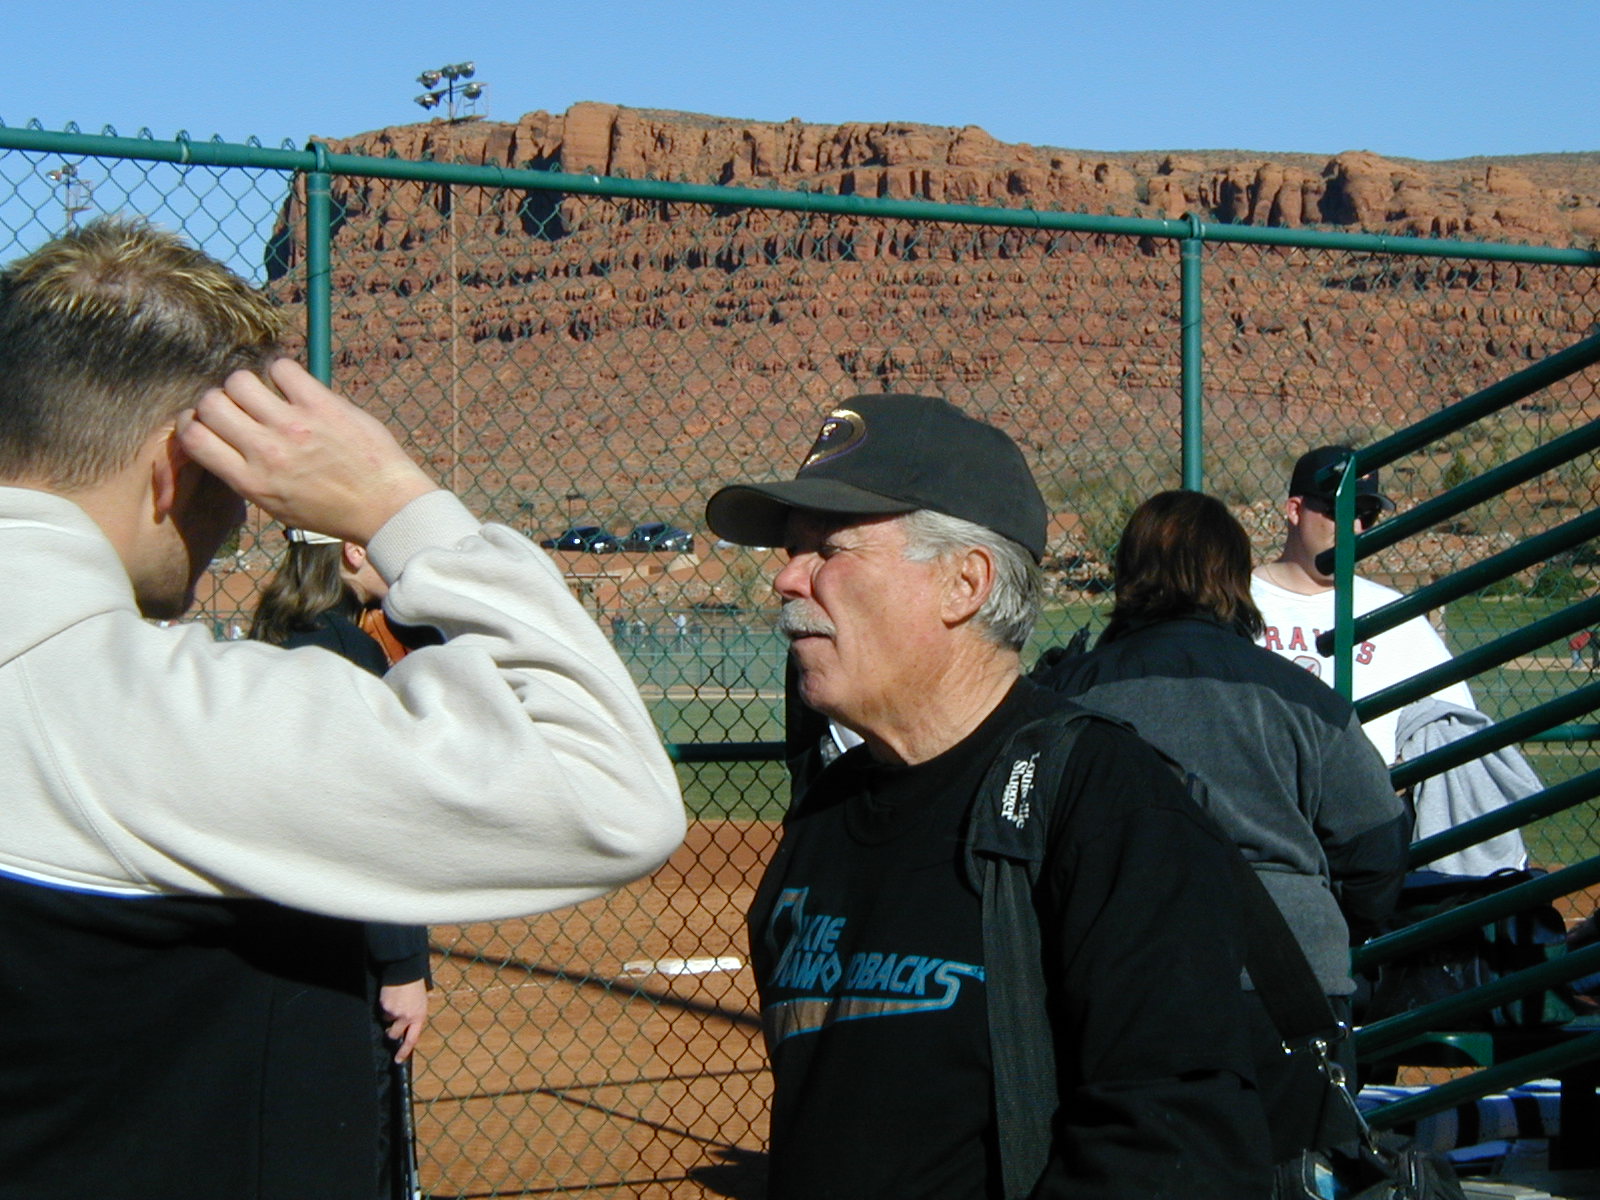 Bill Wilbur talking to someone at a ballpark